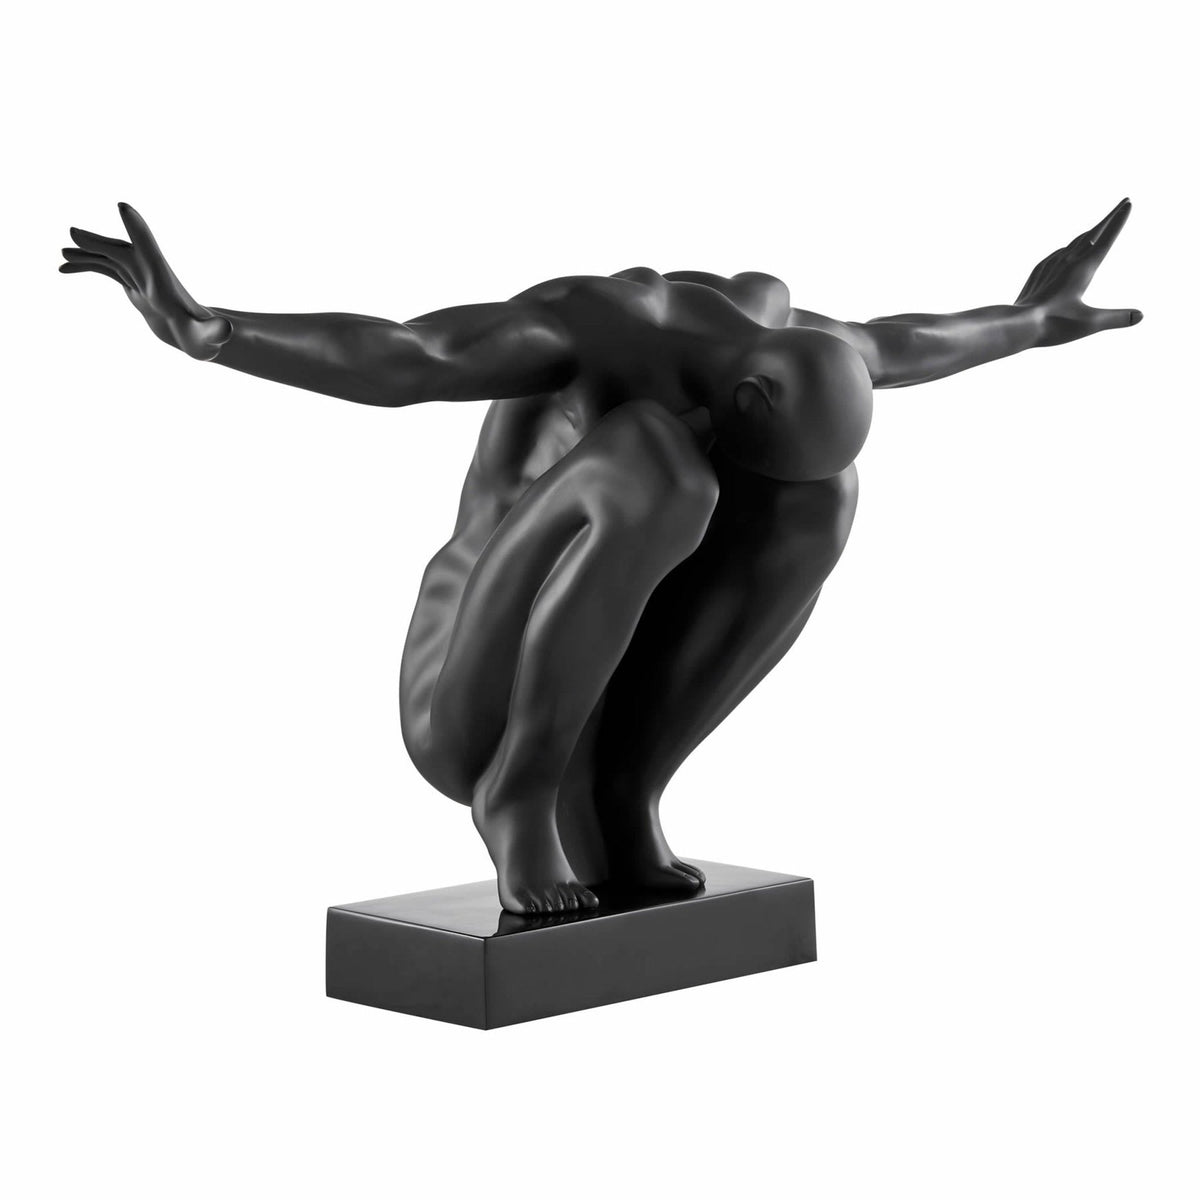 Saluting Man Resin Sculpture in Matte Black / Large